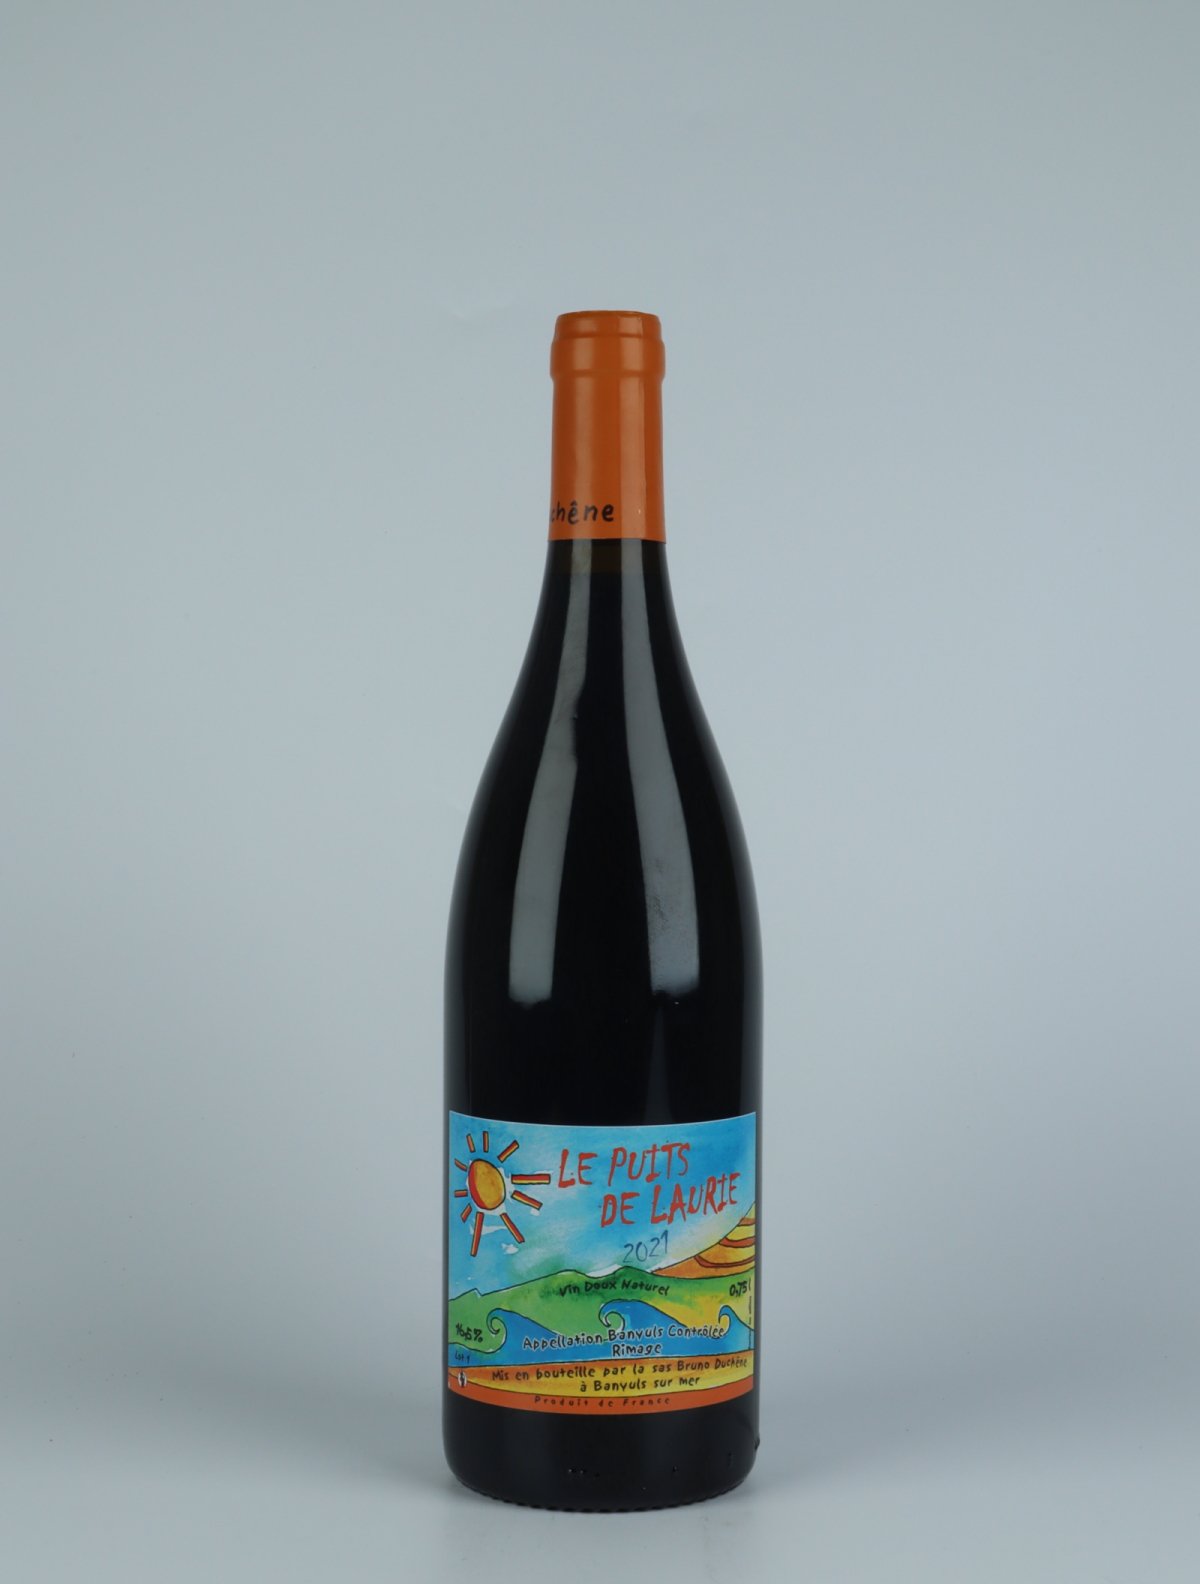 En flaske 2021 Le Puit de Laurie Sød vin fra Bruno Duchêne, Rousillon i Frankrig